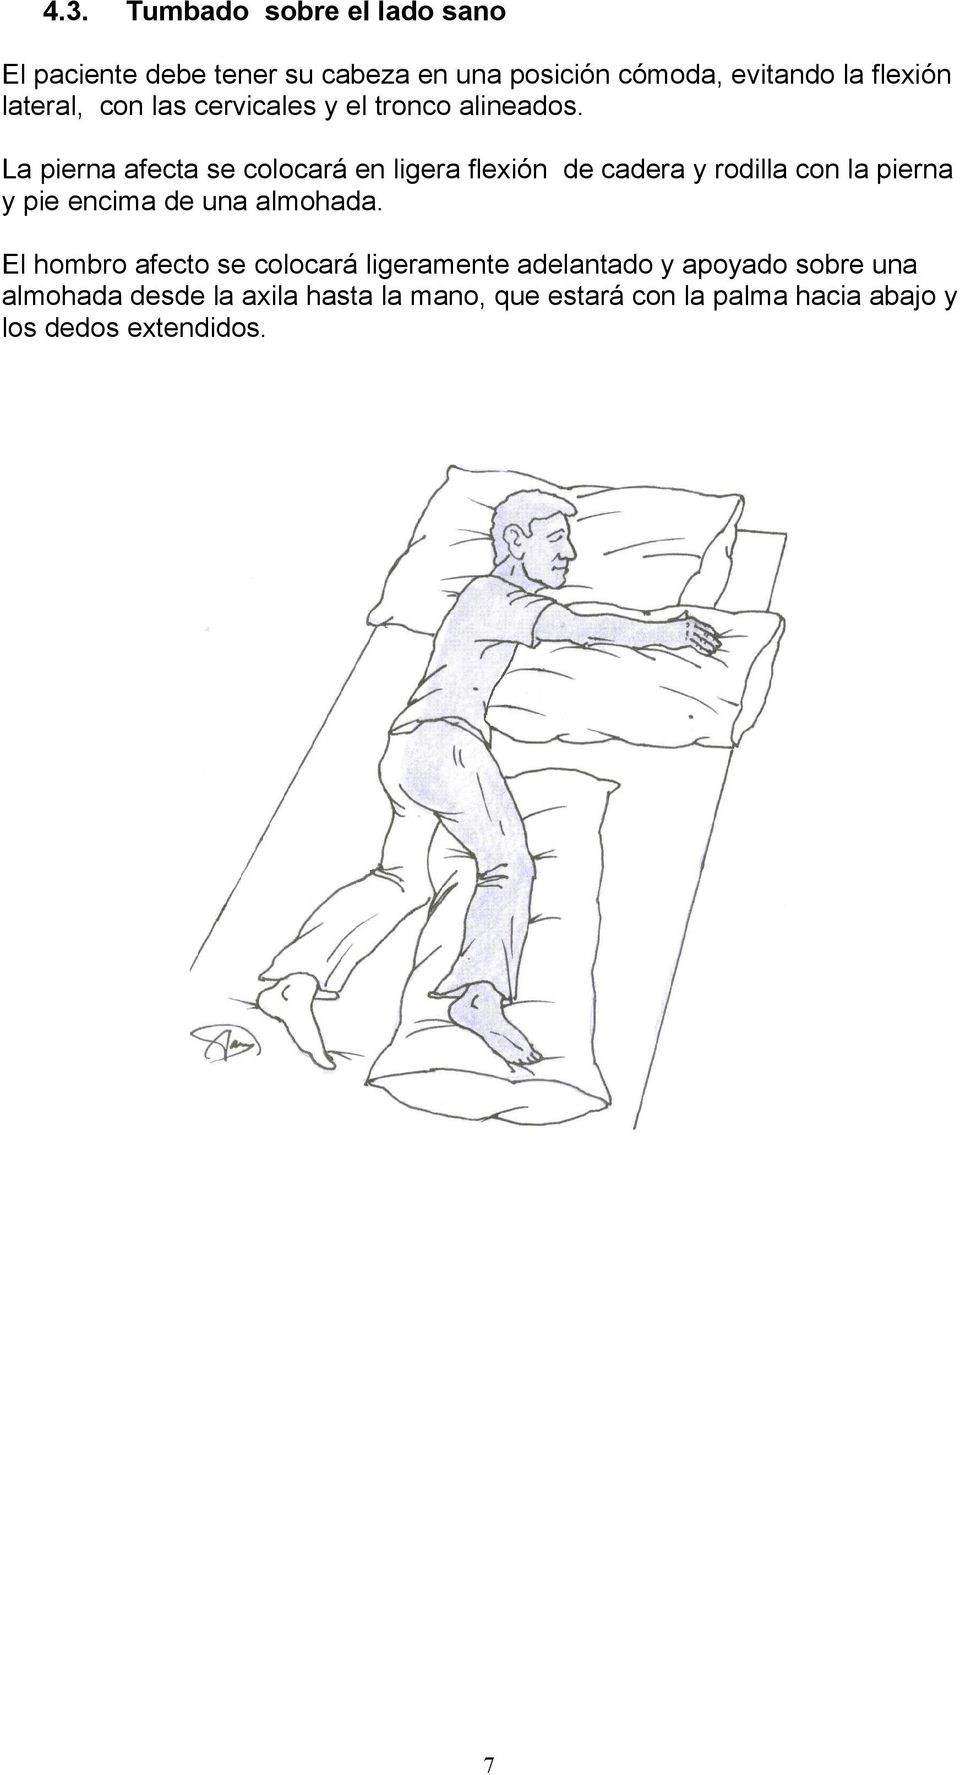 La pierna afecta se colocará en ligera flexión de cadera y rodilla con la pierna y pie encima de una almohada.